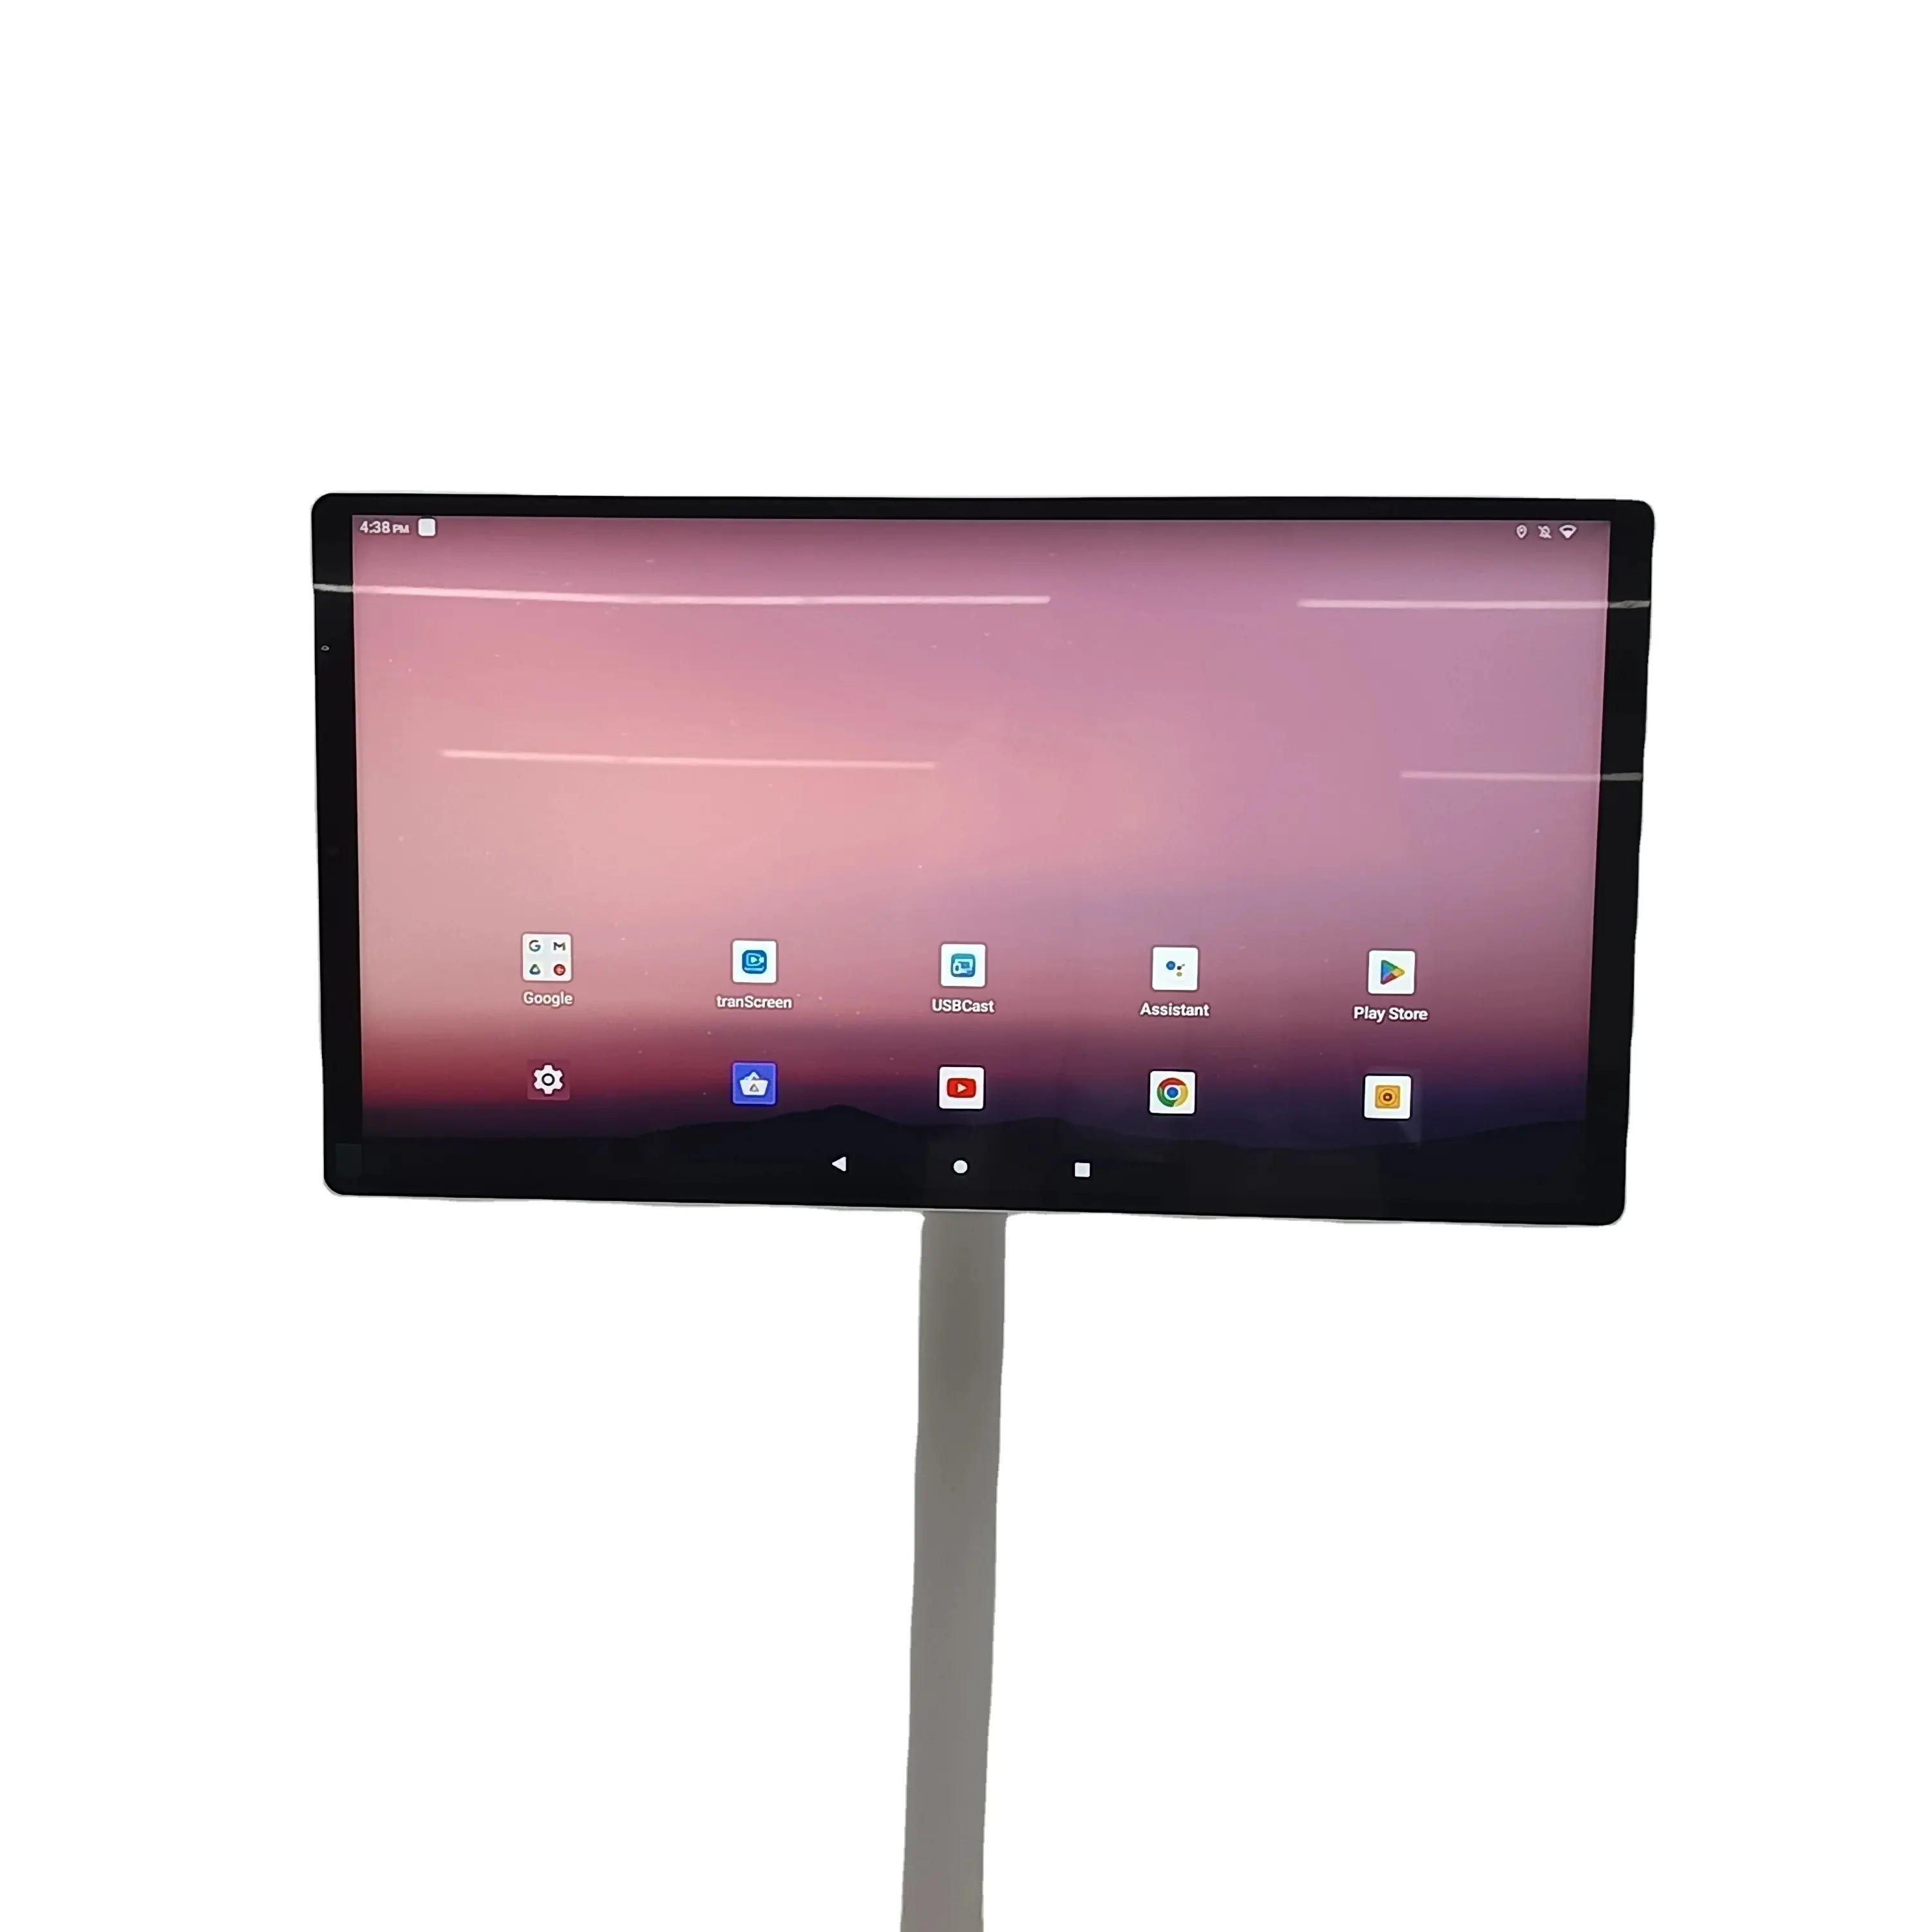 Shenzhen MDS ekran dönebilir 21.5 inç zemin ayakta taşınabilir stant bana akıllı Tv spor oyun Video oynatıcı akıllı ekran